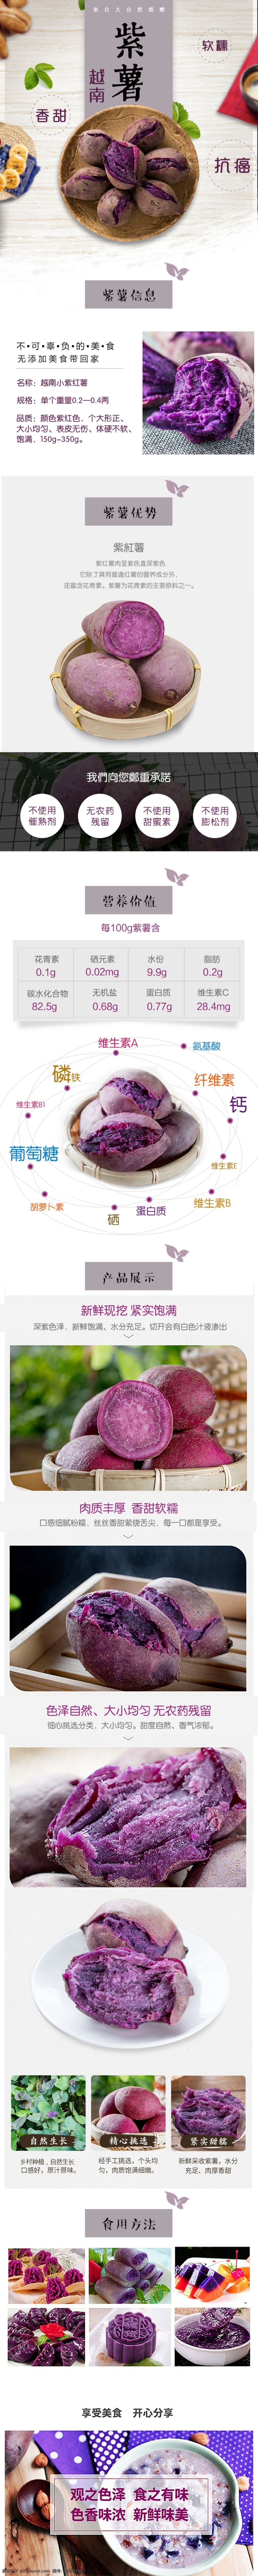 越南 小 紫 薯 红薯 淘宝 详情 页 设计图 紫薯 天猫 详情页 越南紫薯 软糯香甜 紫色红薯